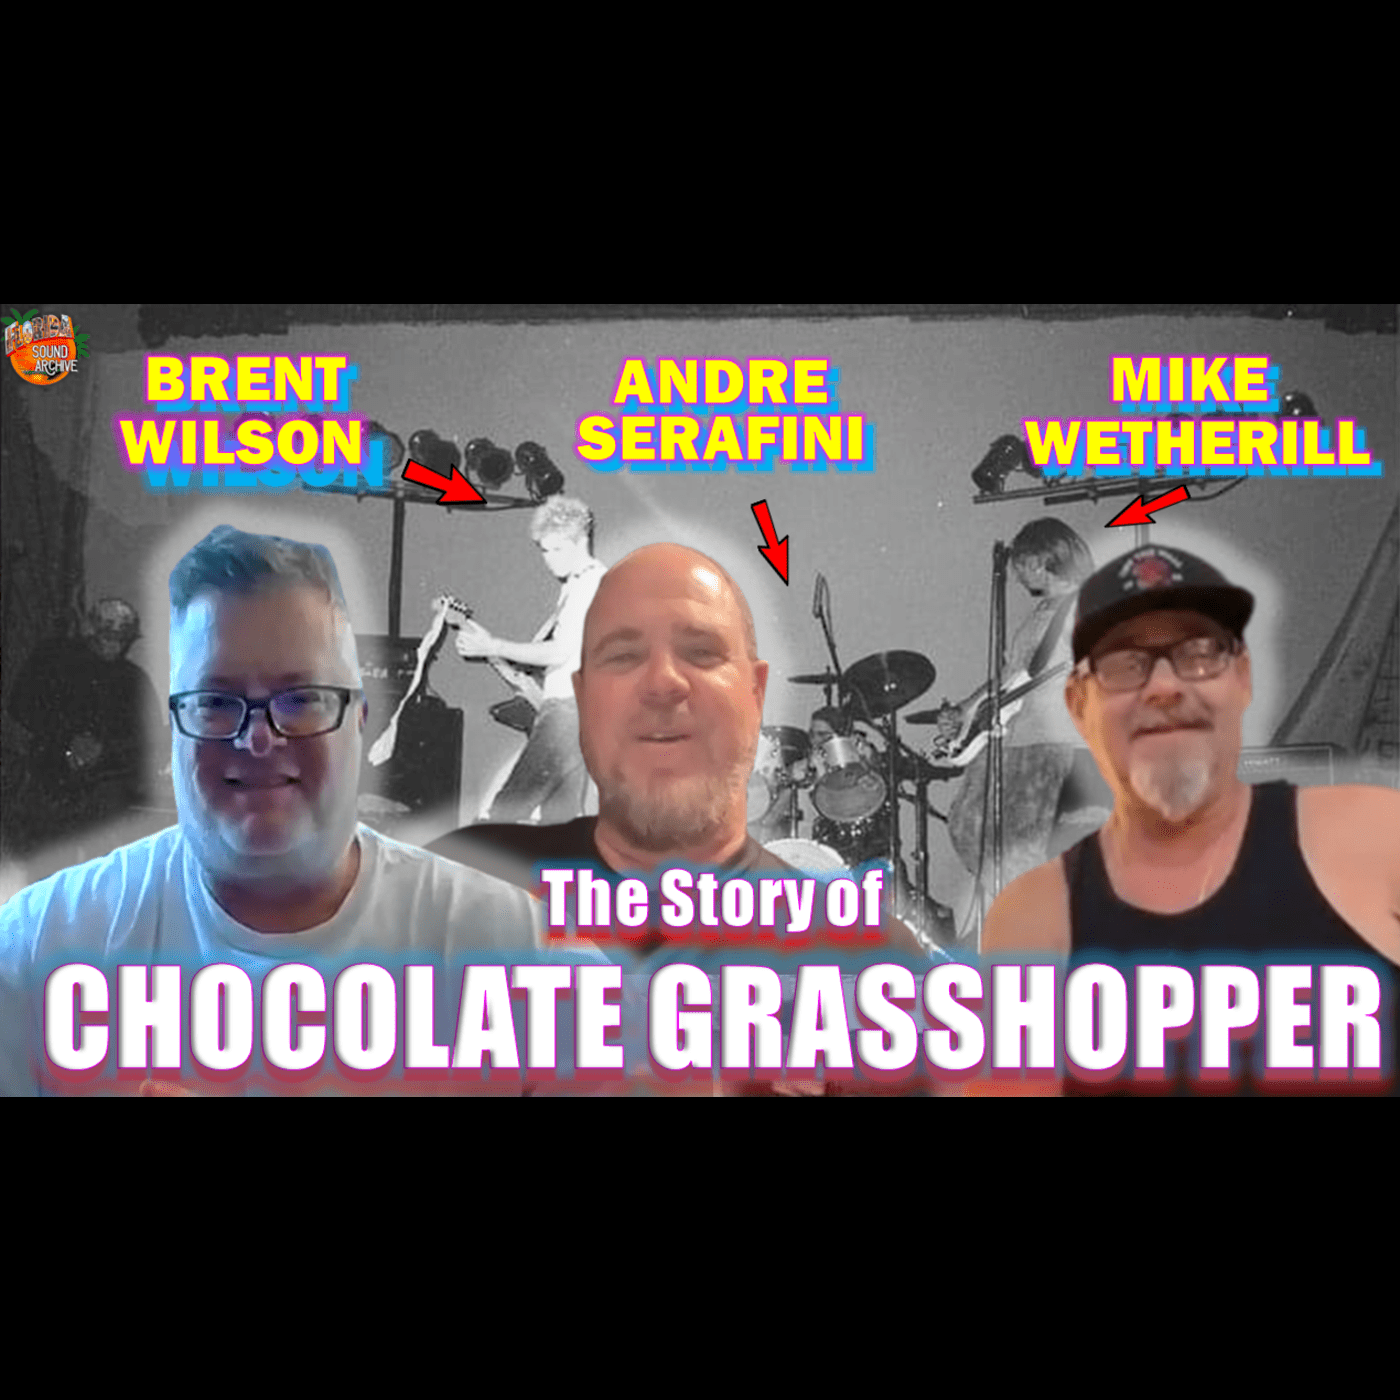 #58 Brent Wilson, Andre Serafini, Mike Wetherill (Chocolate Grasshopper)